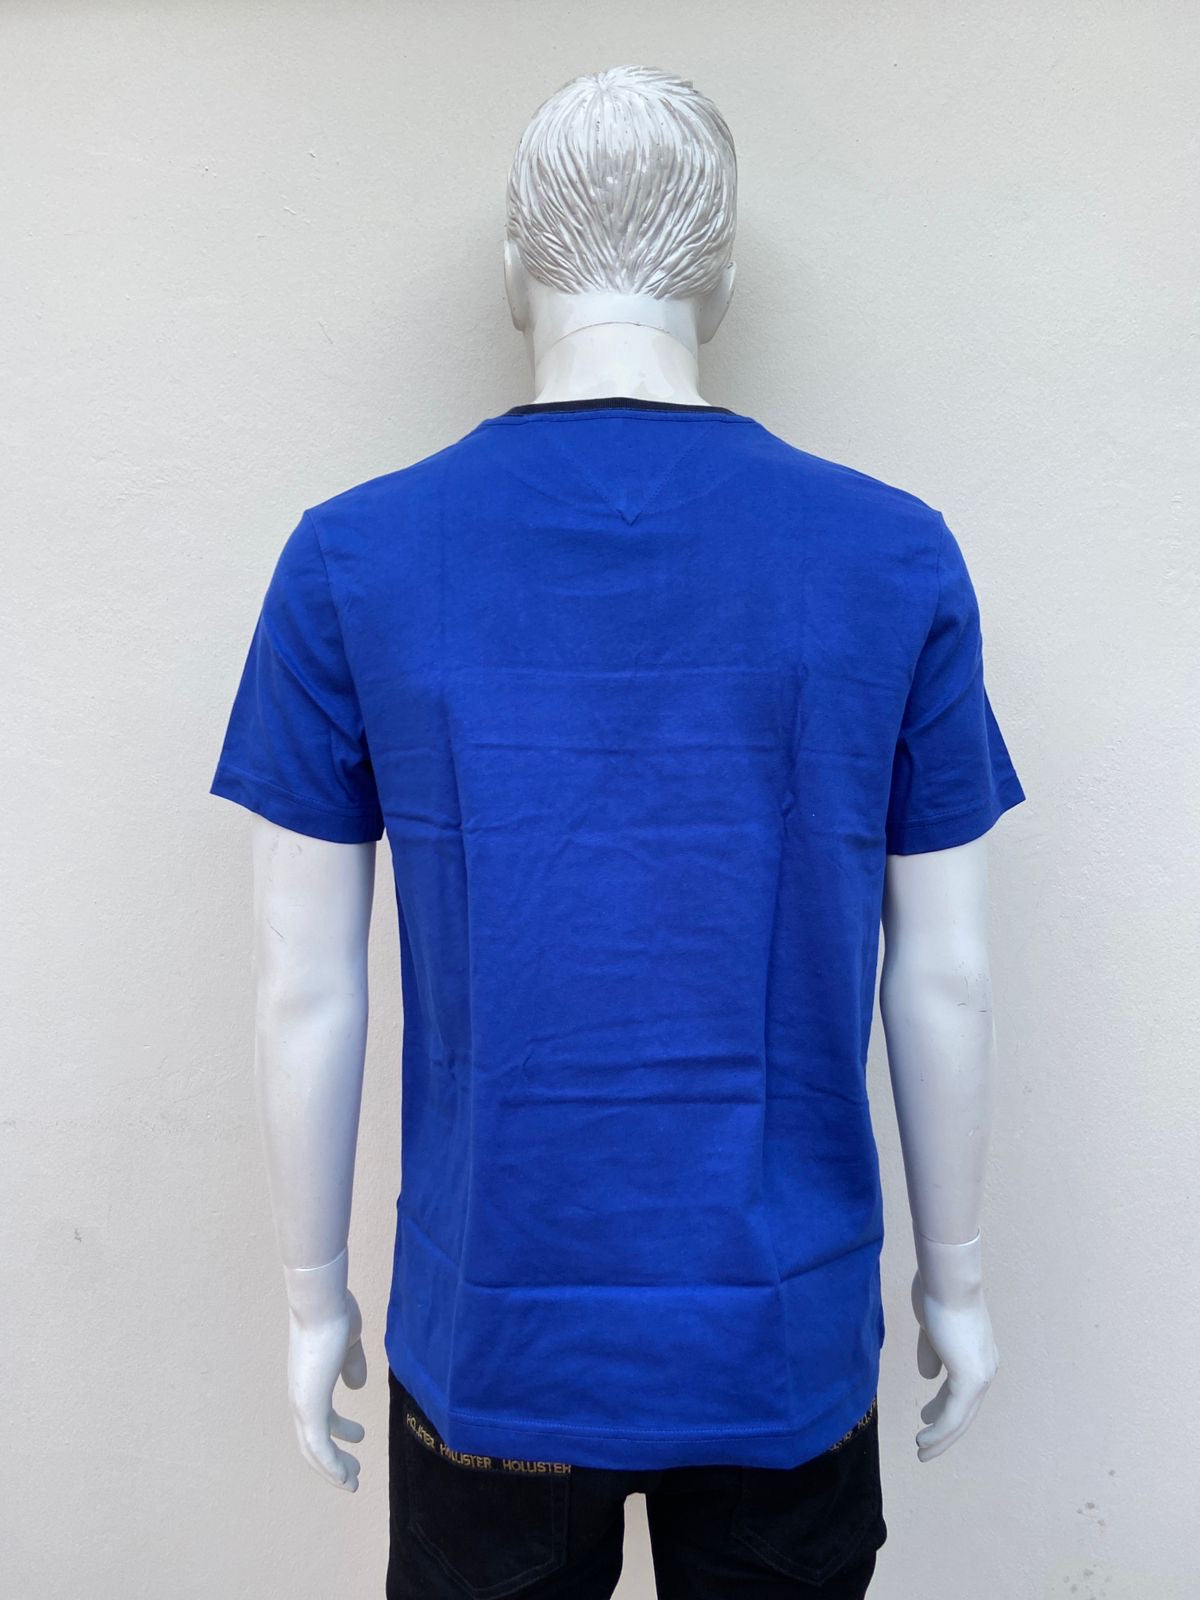 T-shirt Tommy Hilfiger original, azul con logotipo de la marca pequeña en frente y cuello negro.